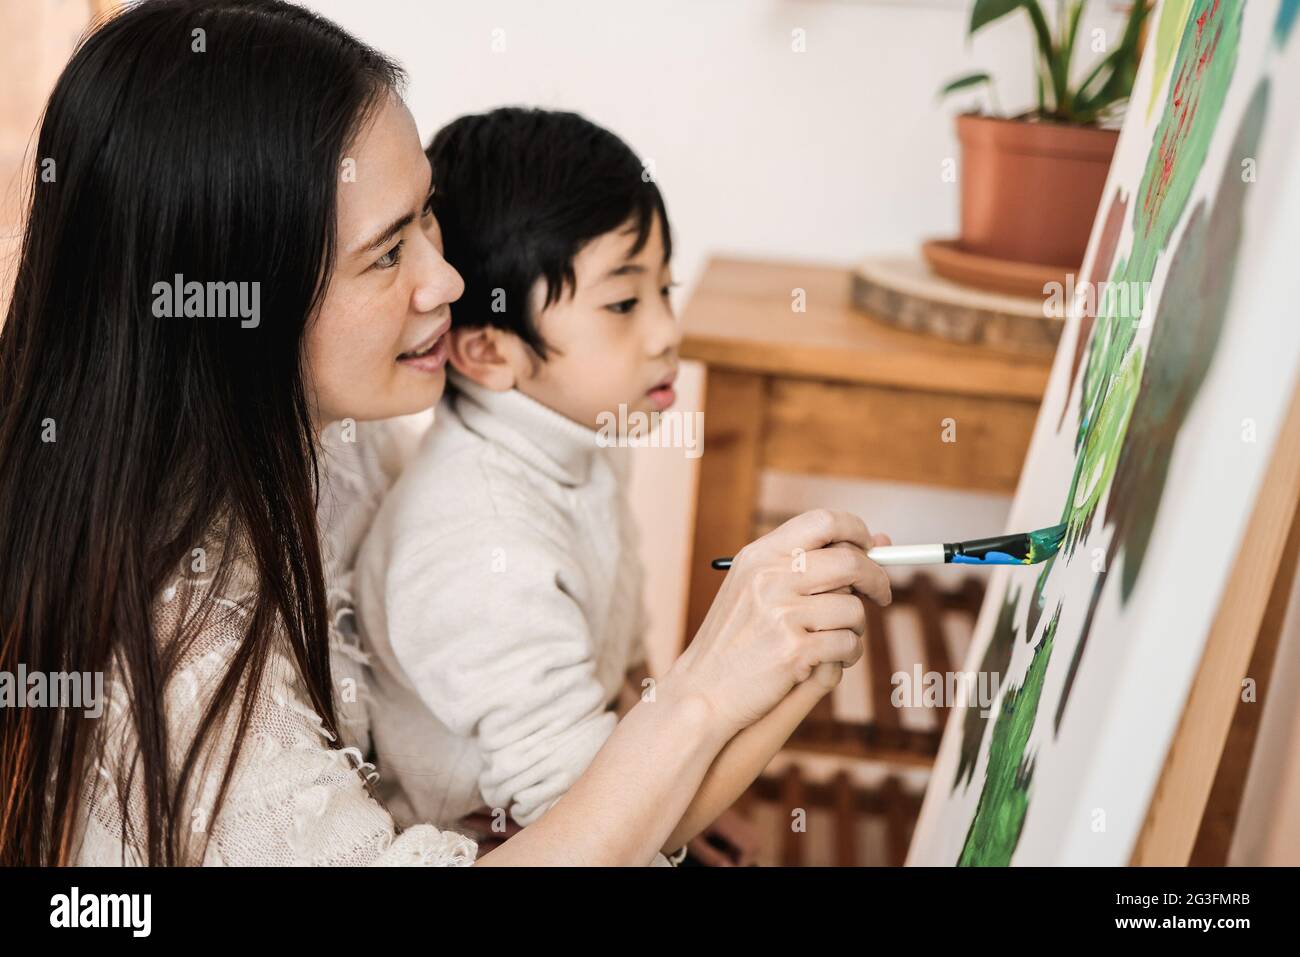 Enfant asiatique et maman peinture sur toile pendant les cours d'art à la maison - Focus sur la femme oeil Banque D'Images